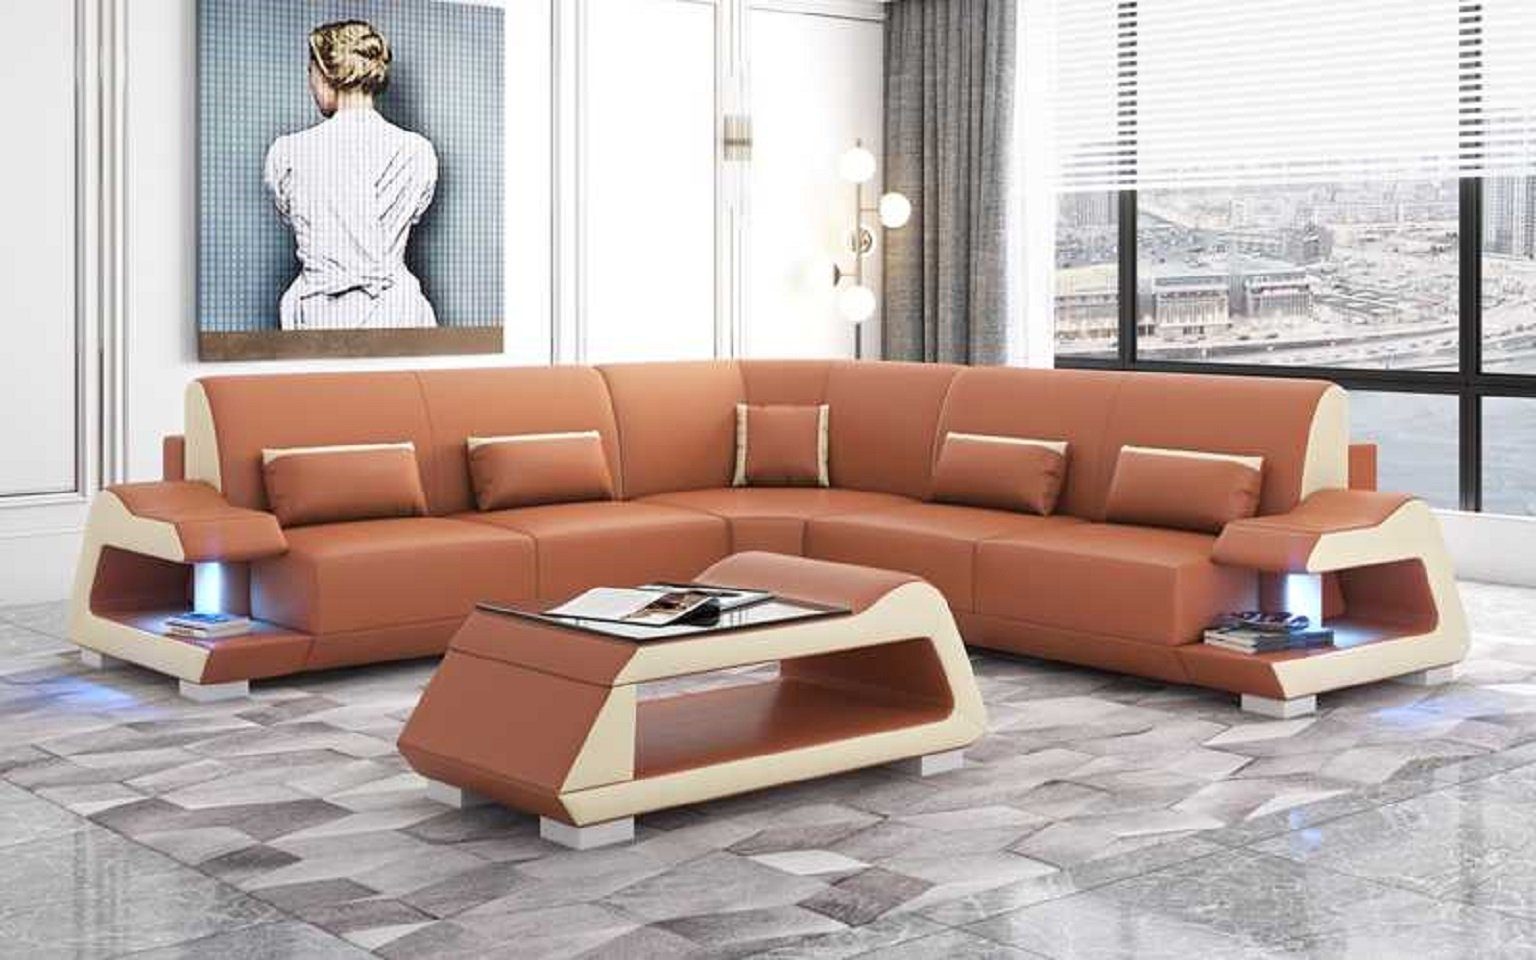 in Sofa Ecksofa 3 Sofas, JVmoebel Eckgarnitur Europe Form Made Braun Wohnzimmer Ecksofa L Luxus Teile,